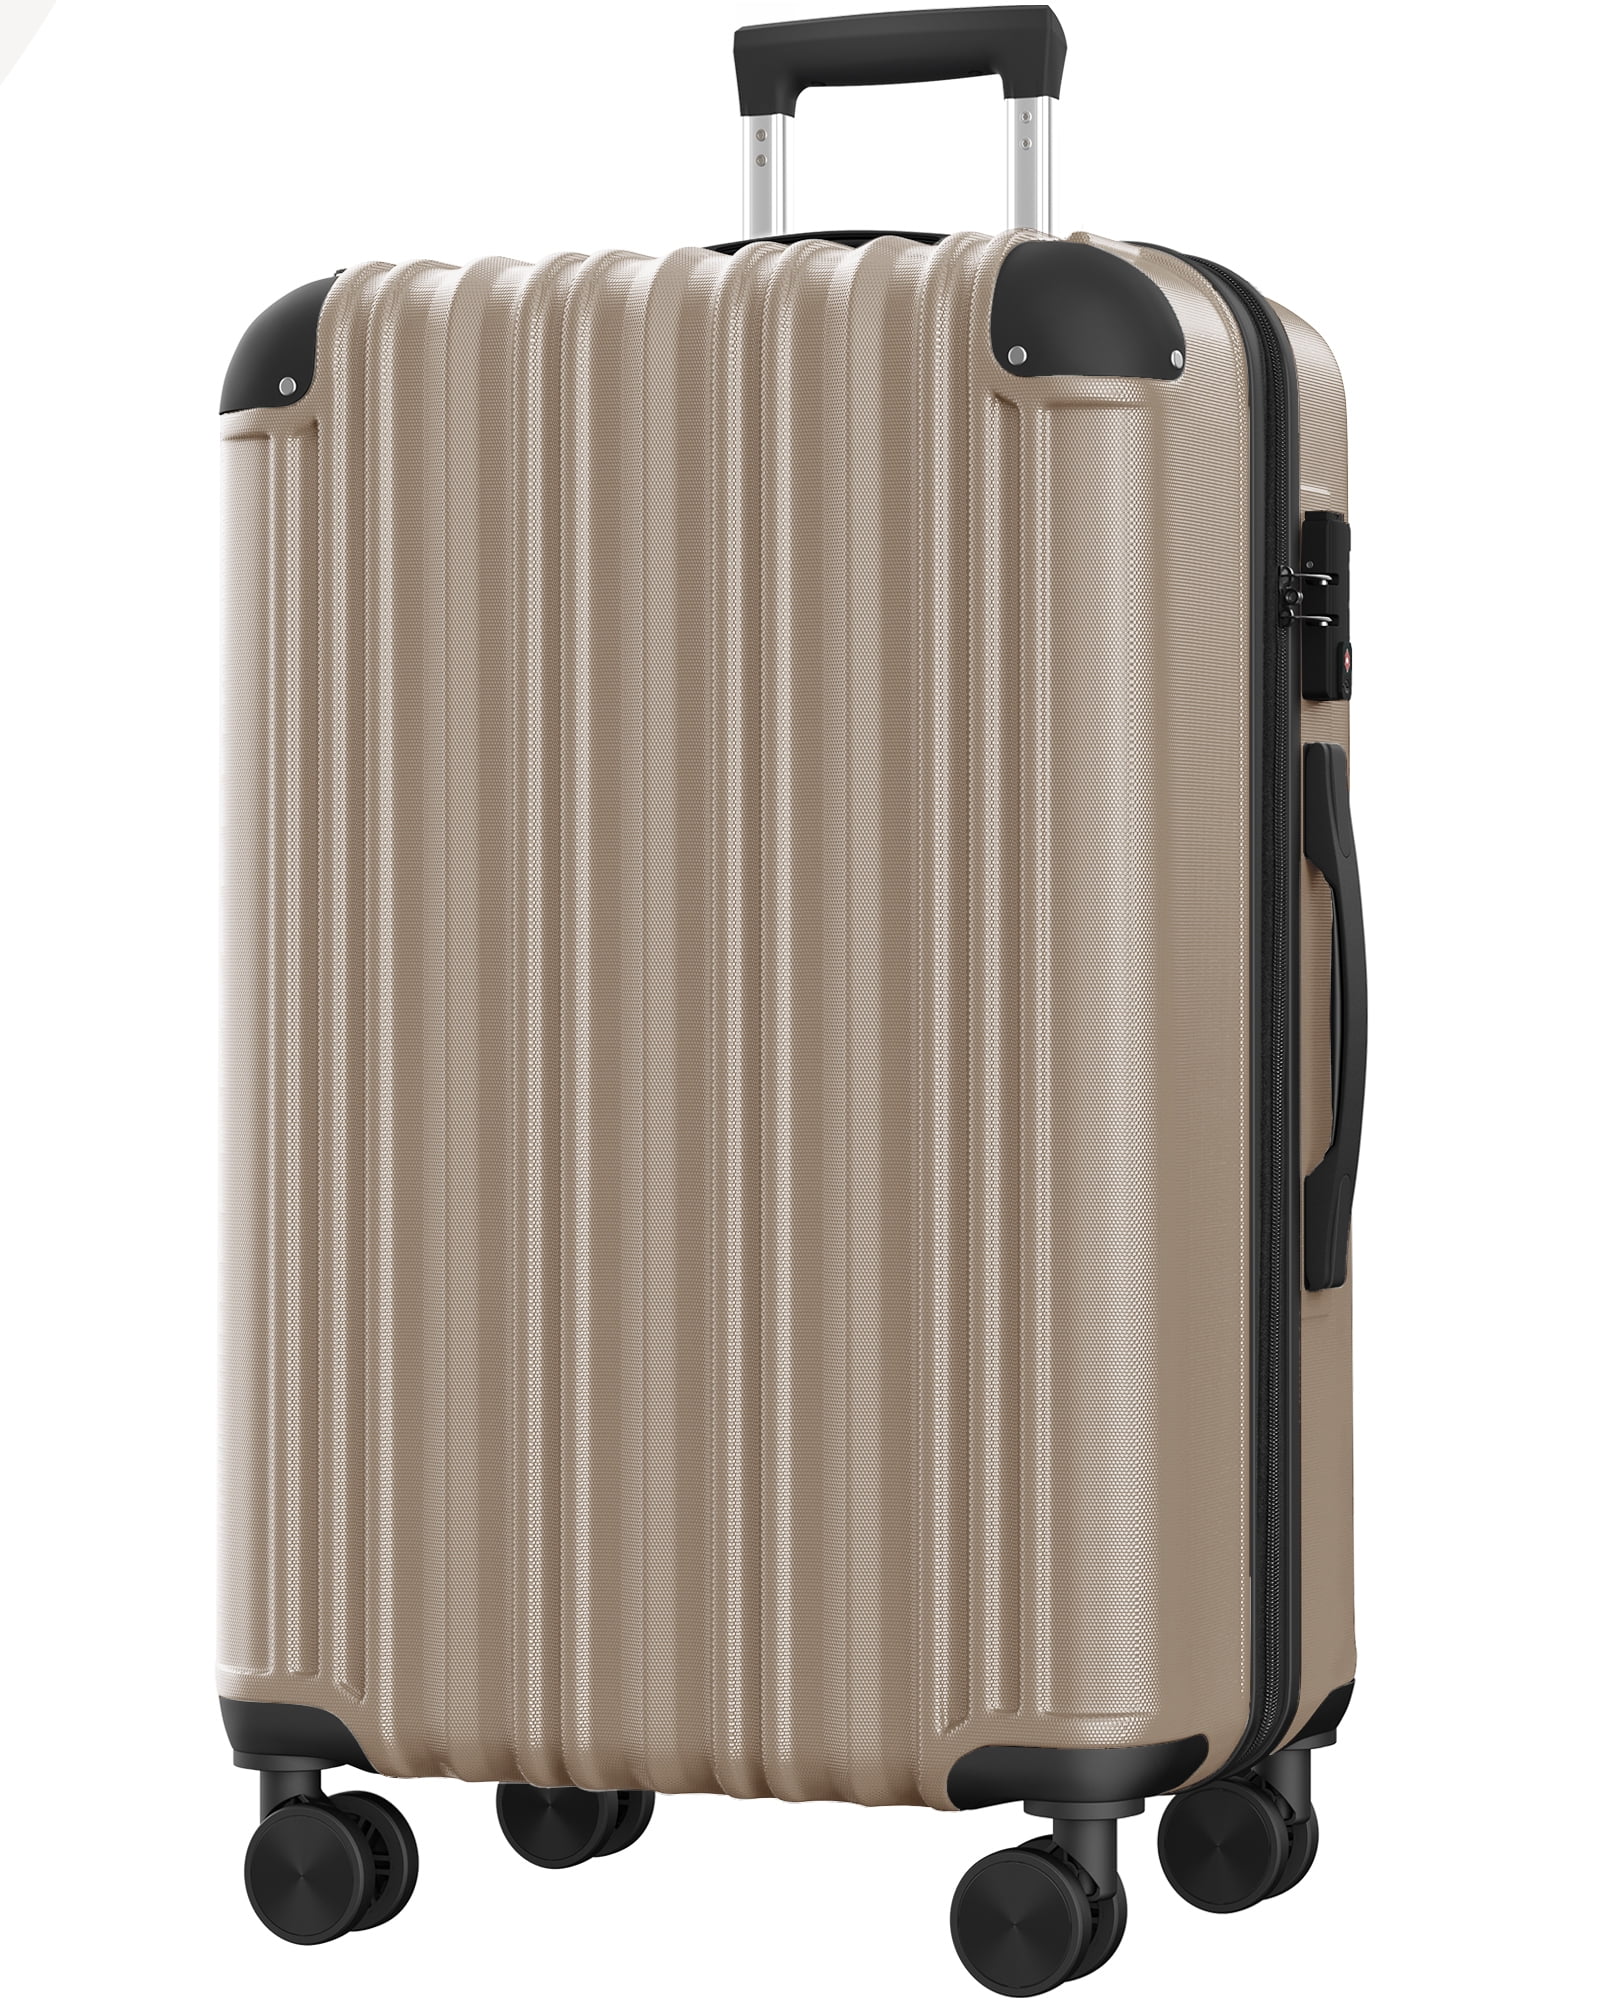 Hardside Expandable Spinner Luggage, 28